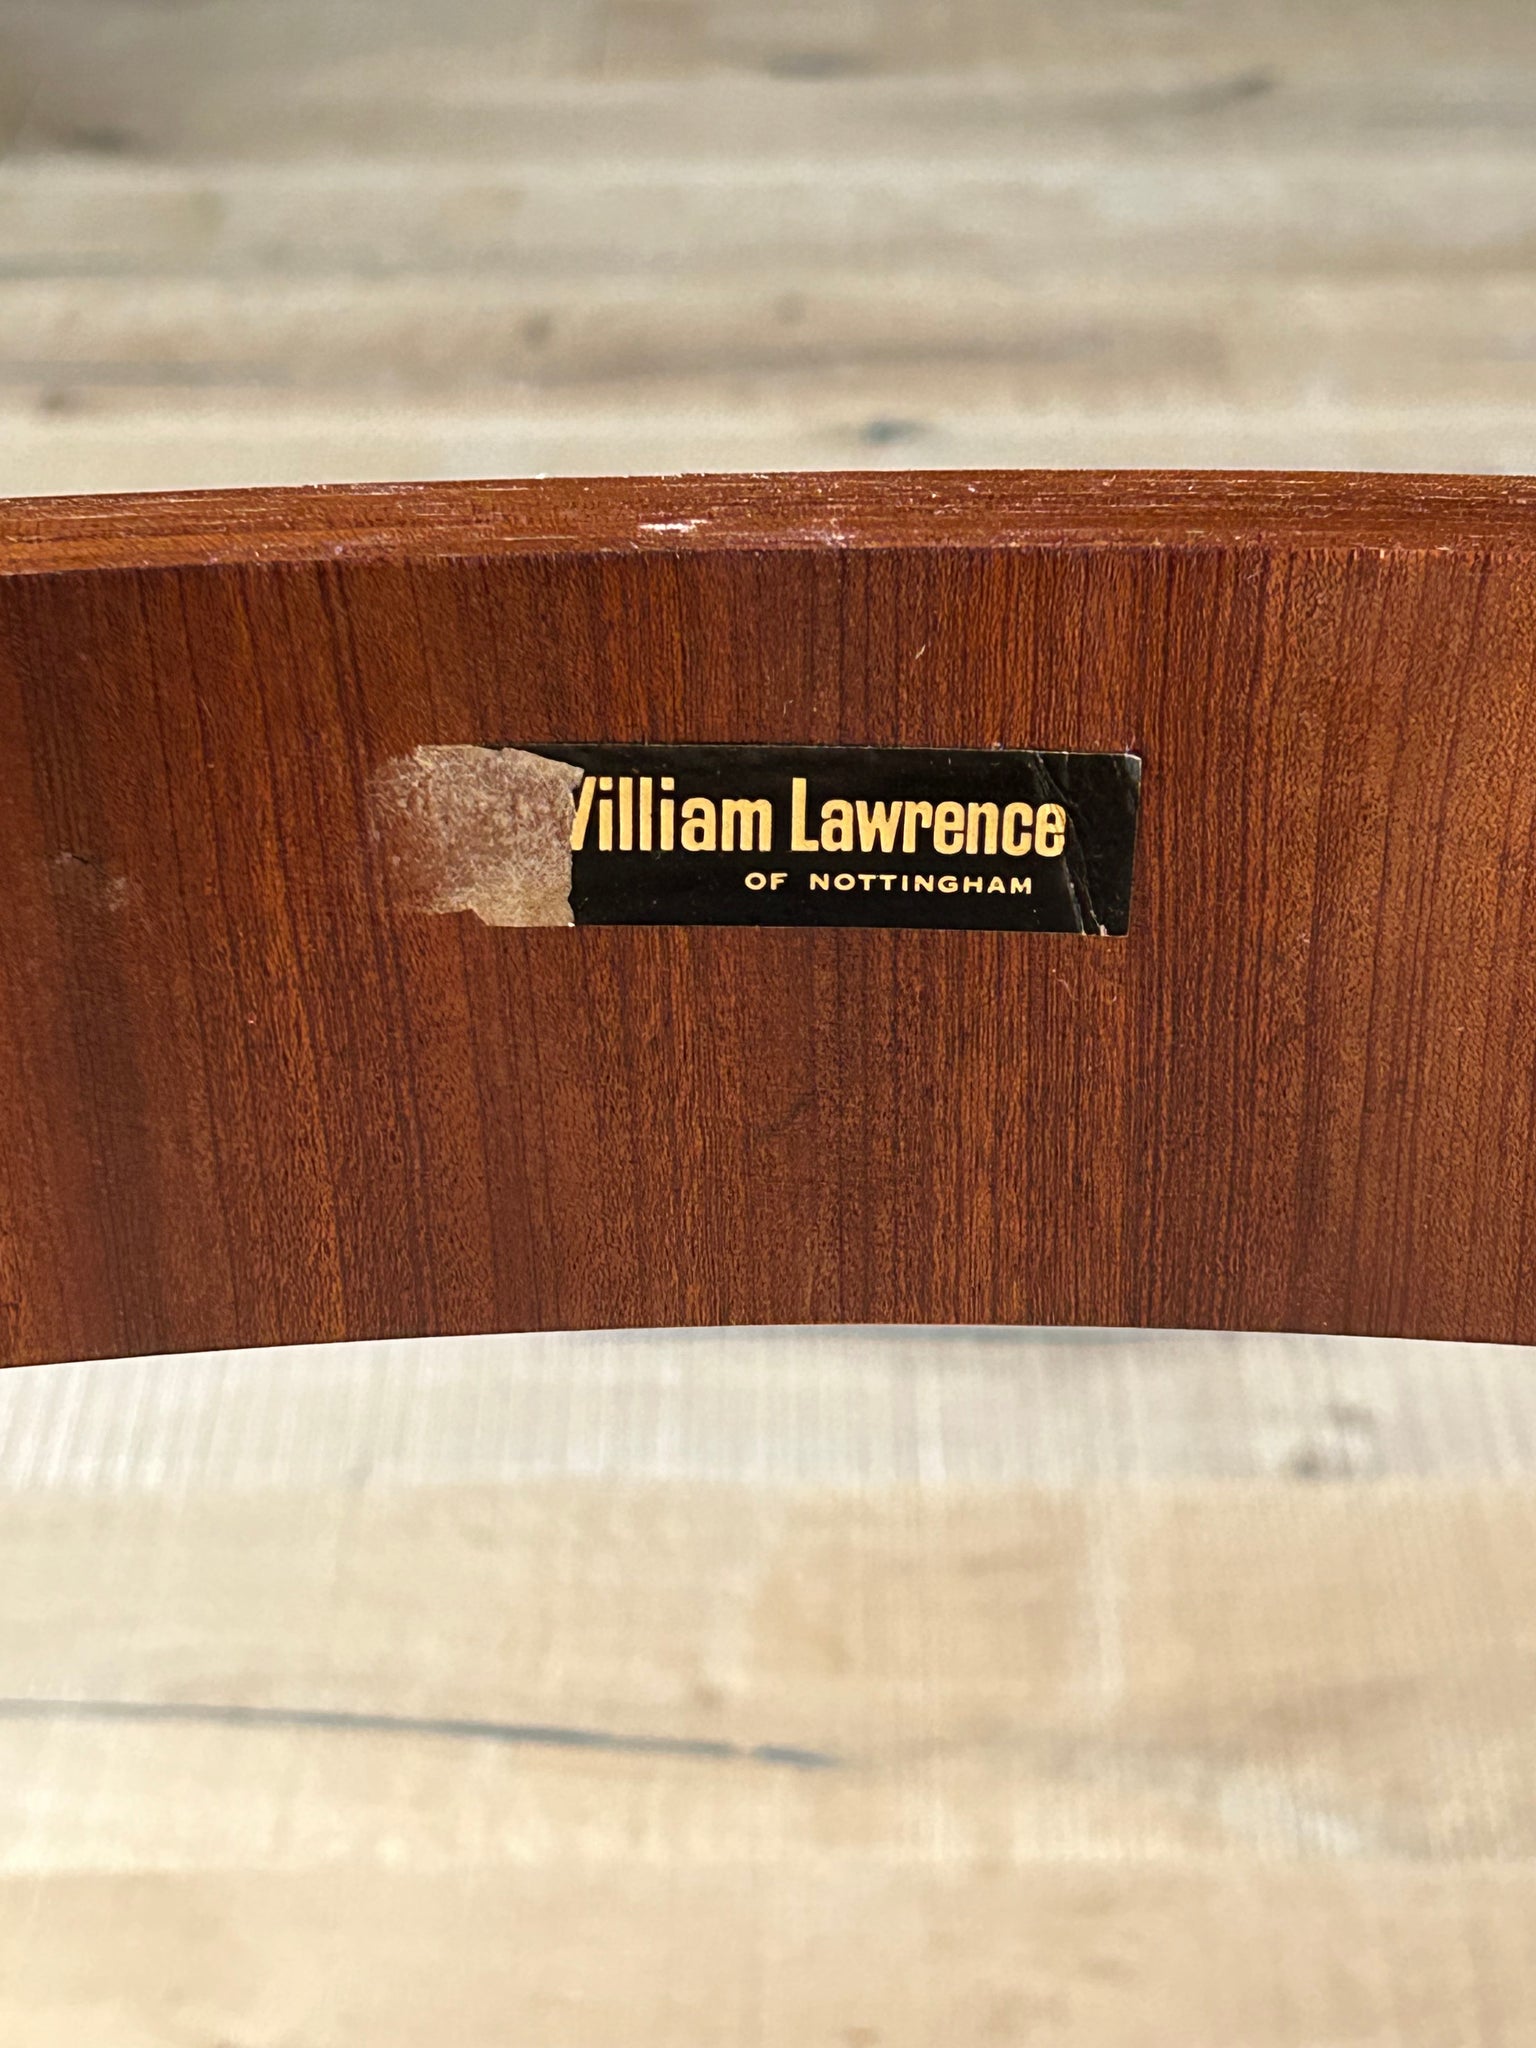 ウィリアム･ローレンス エクステンション ダイニングテーブル / william lawrence extension dining table #0265